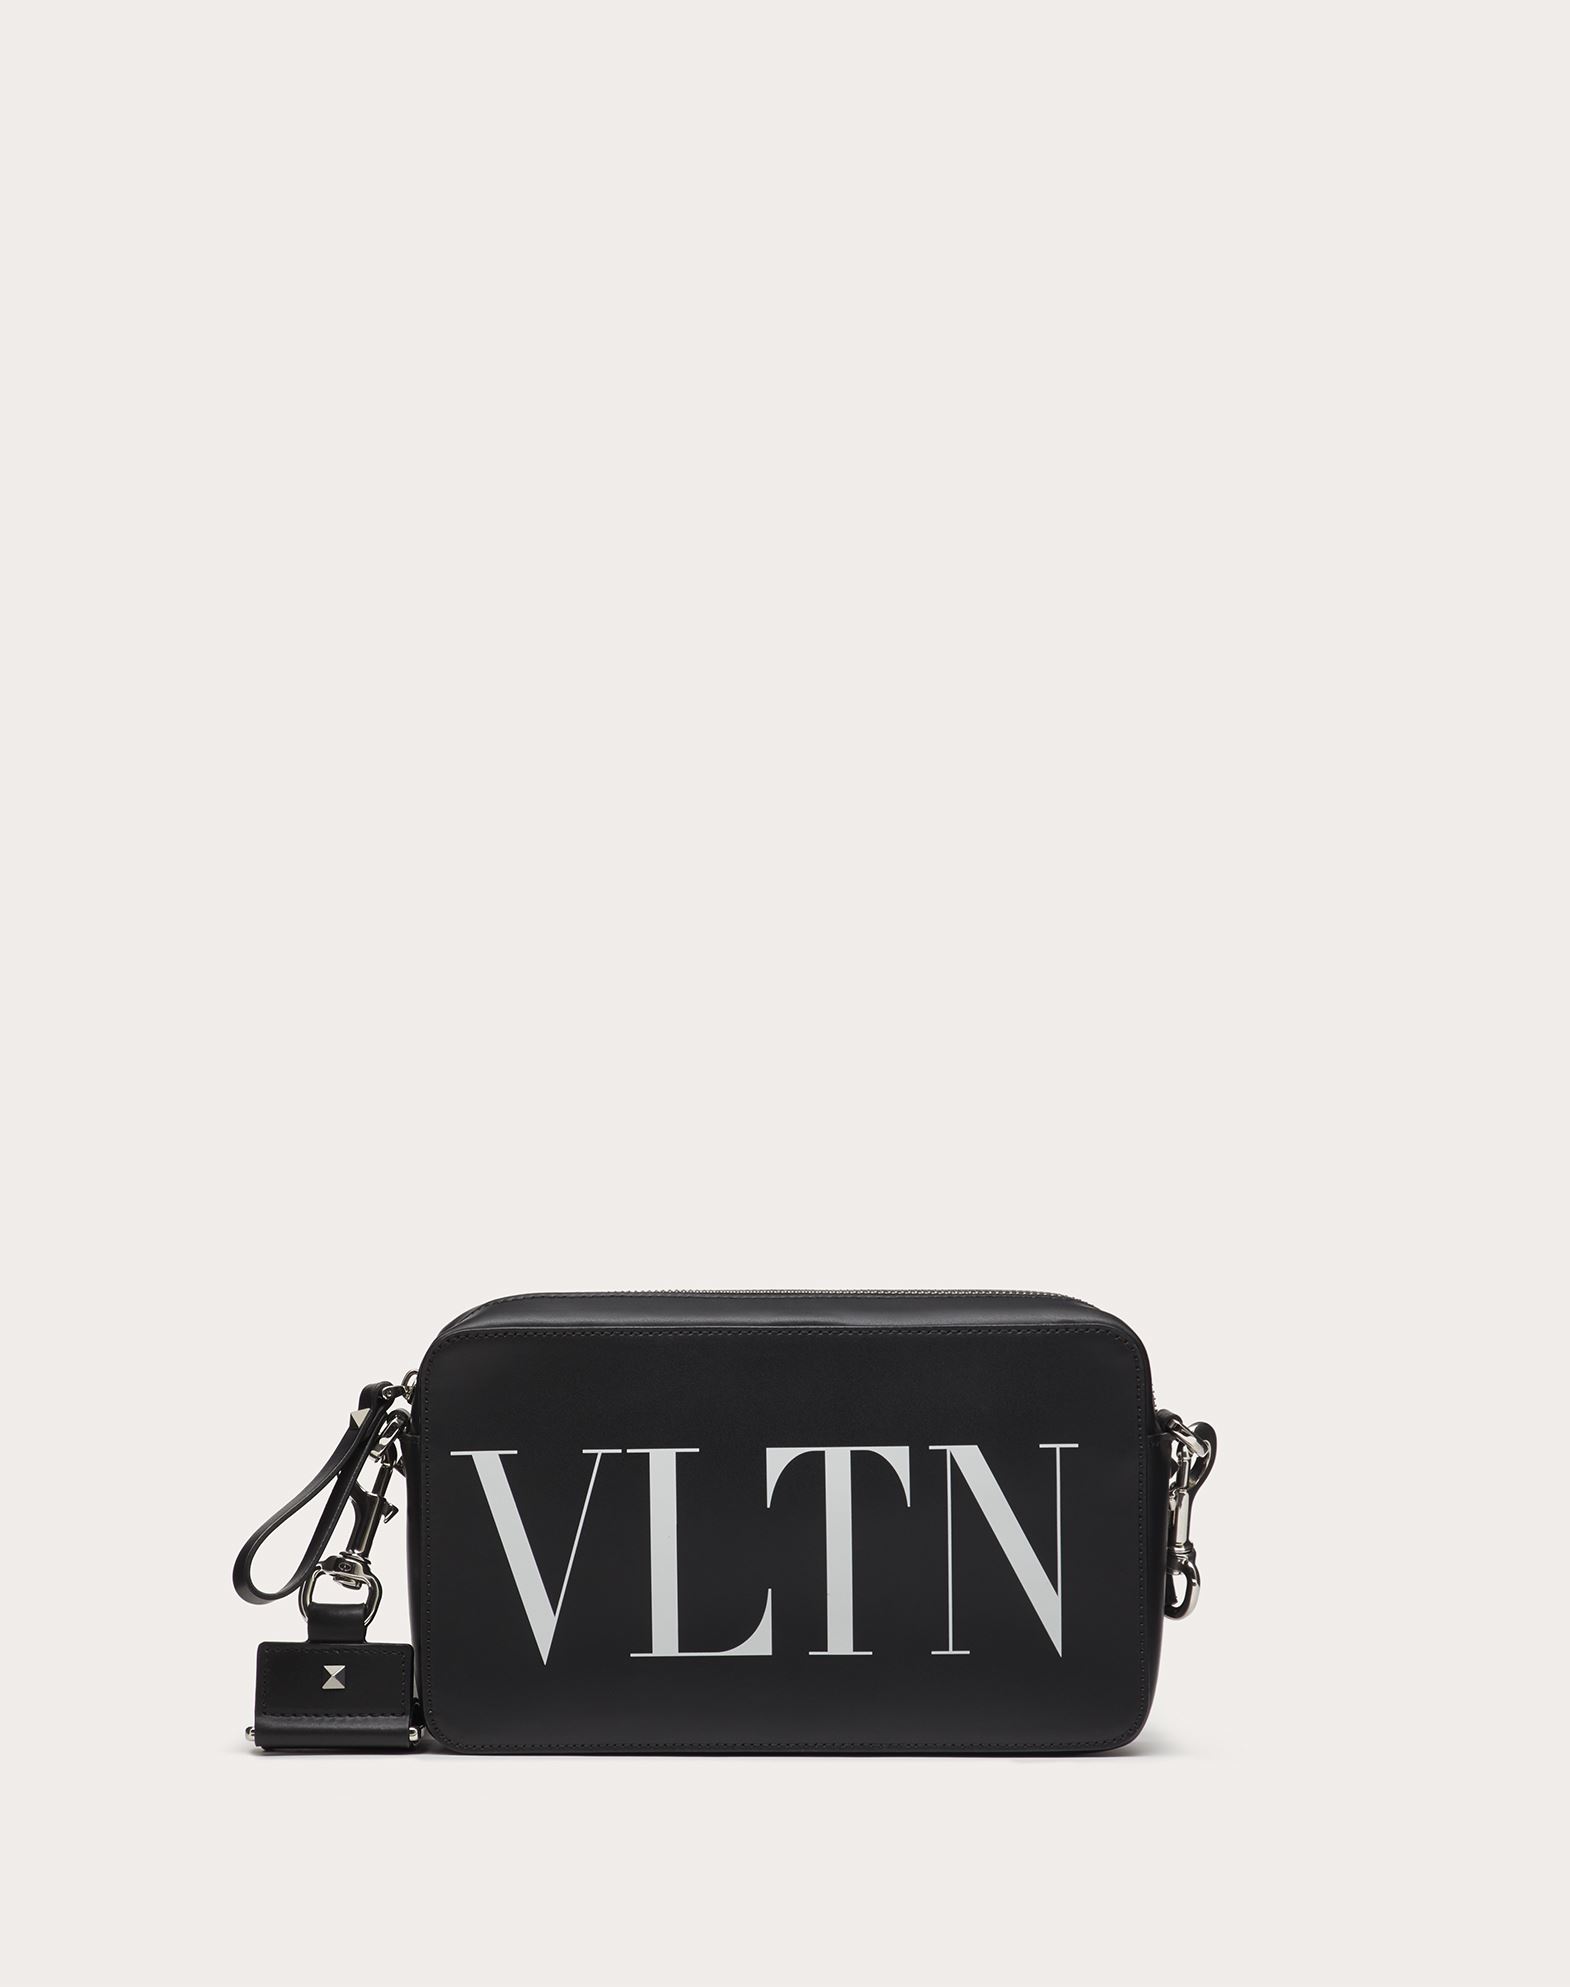 Valentino Garavani Uomo Vltn Leather Crossbody Bag In Black/white ...